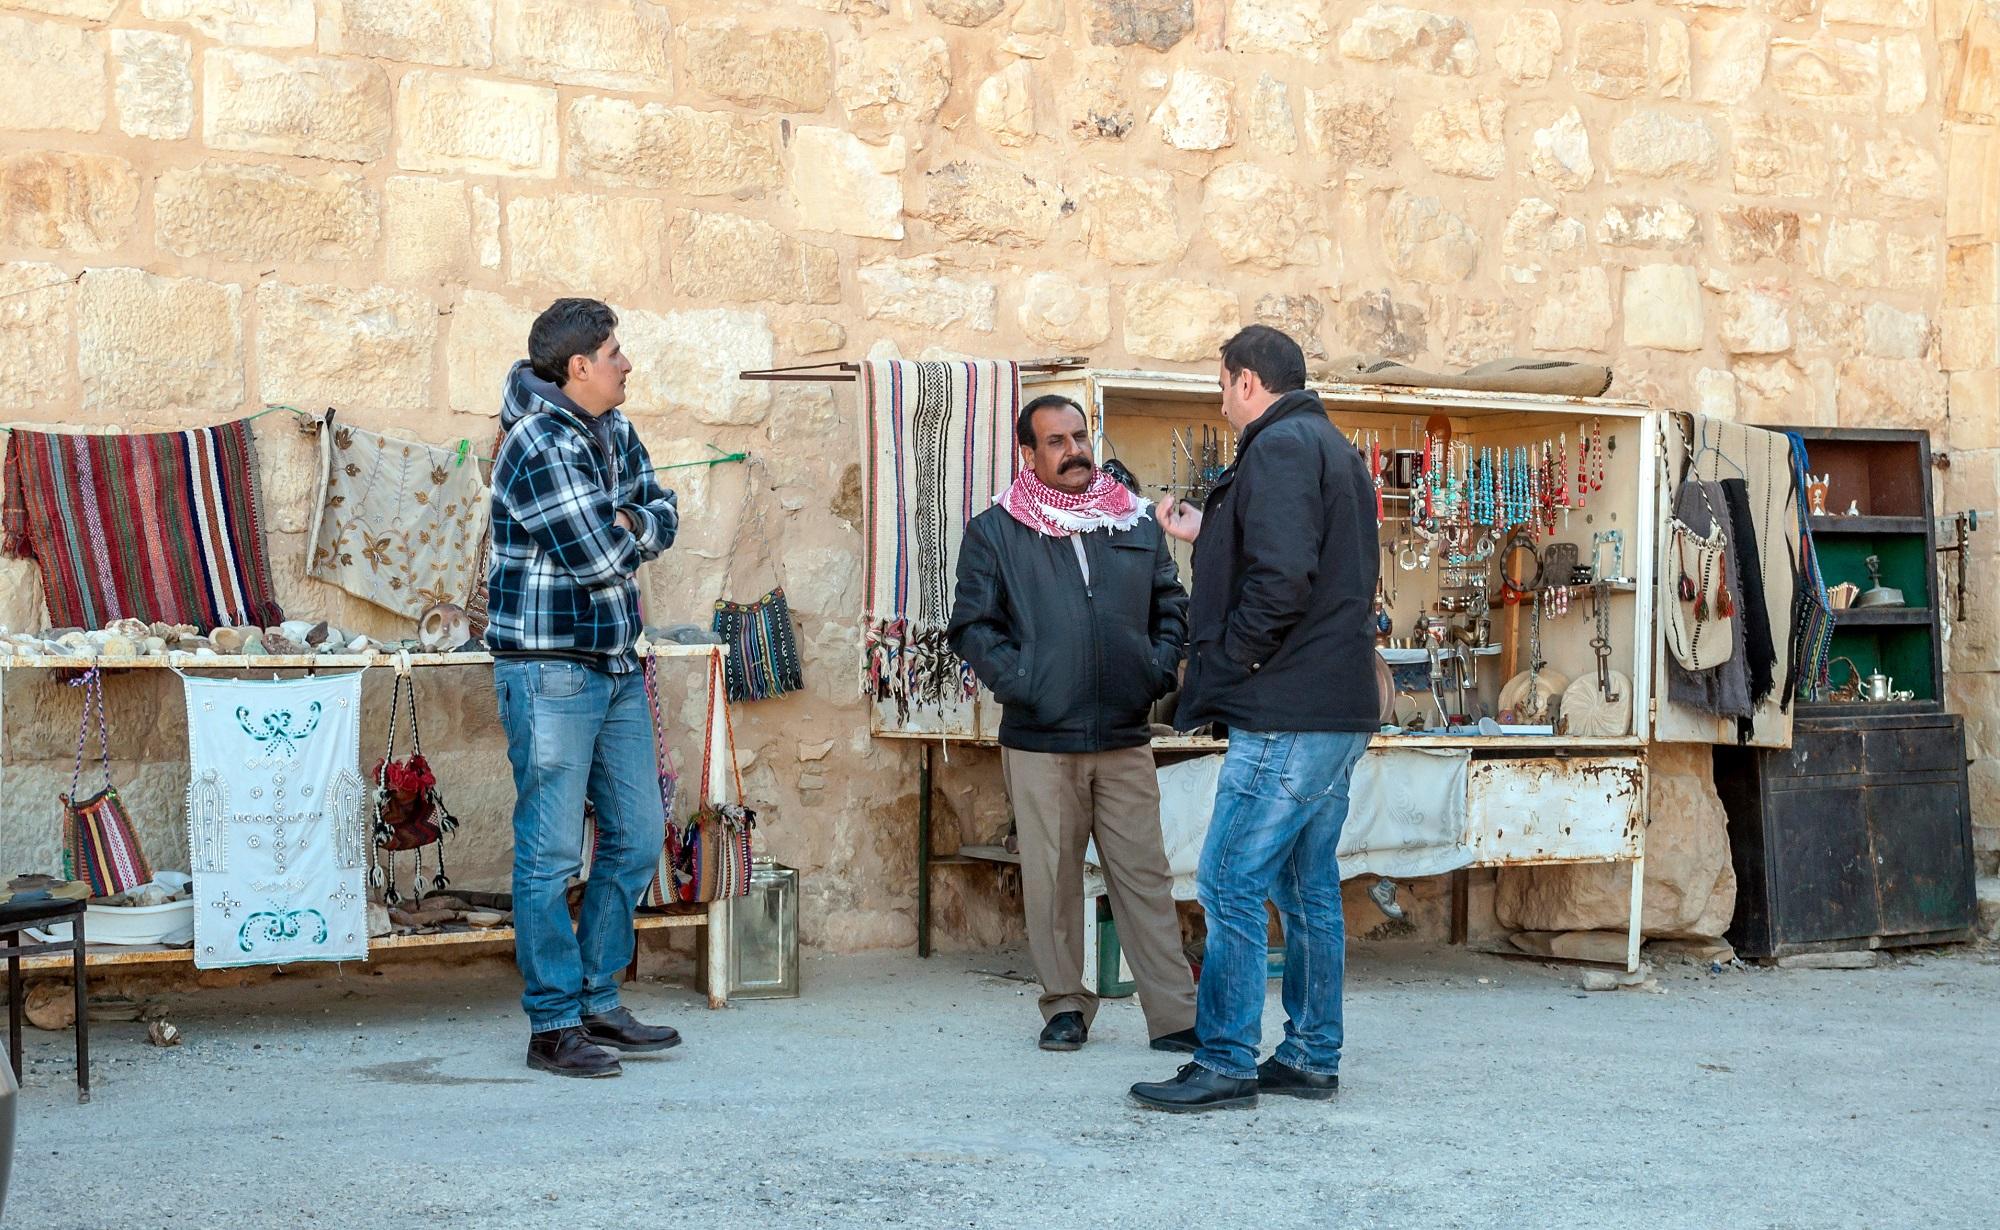 عمال في مدينة الشوبك جنوب الأردن. (Shutterstock)